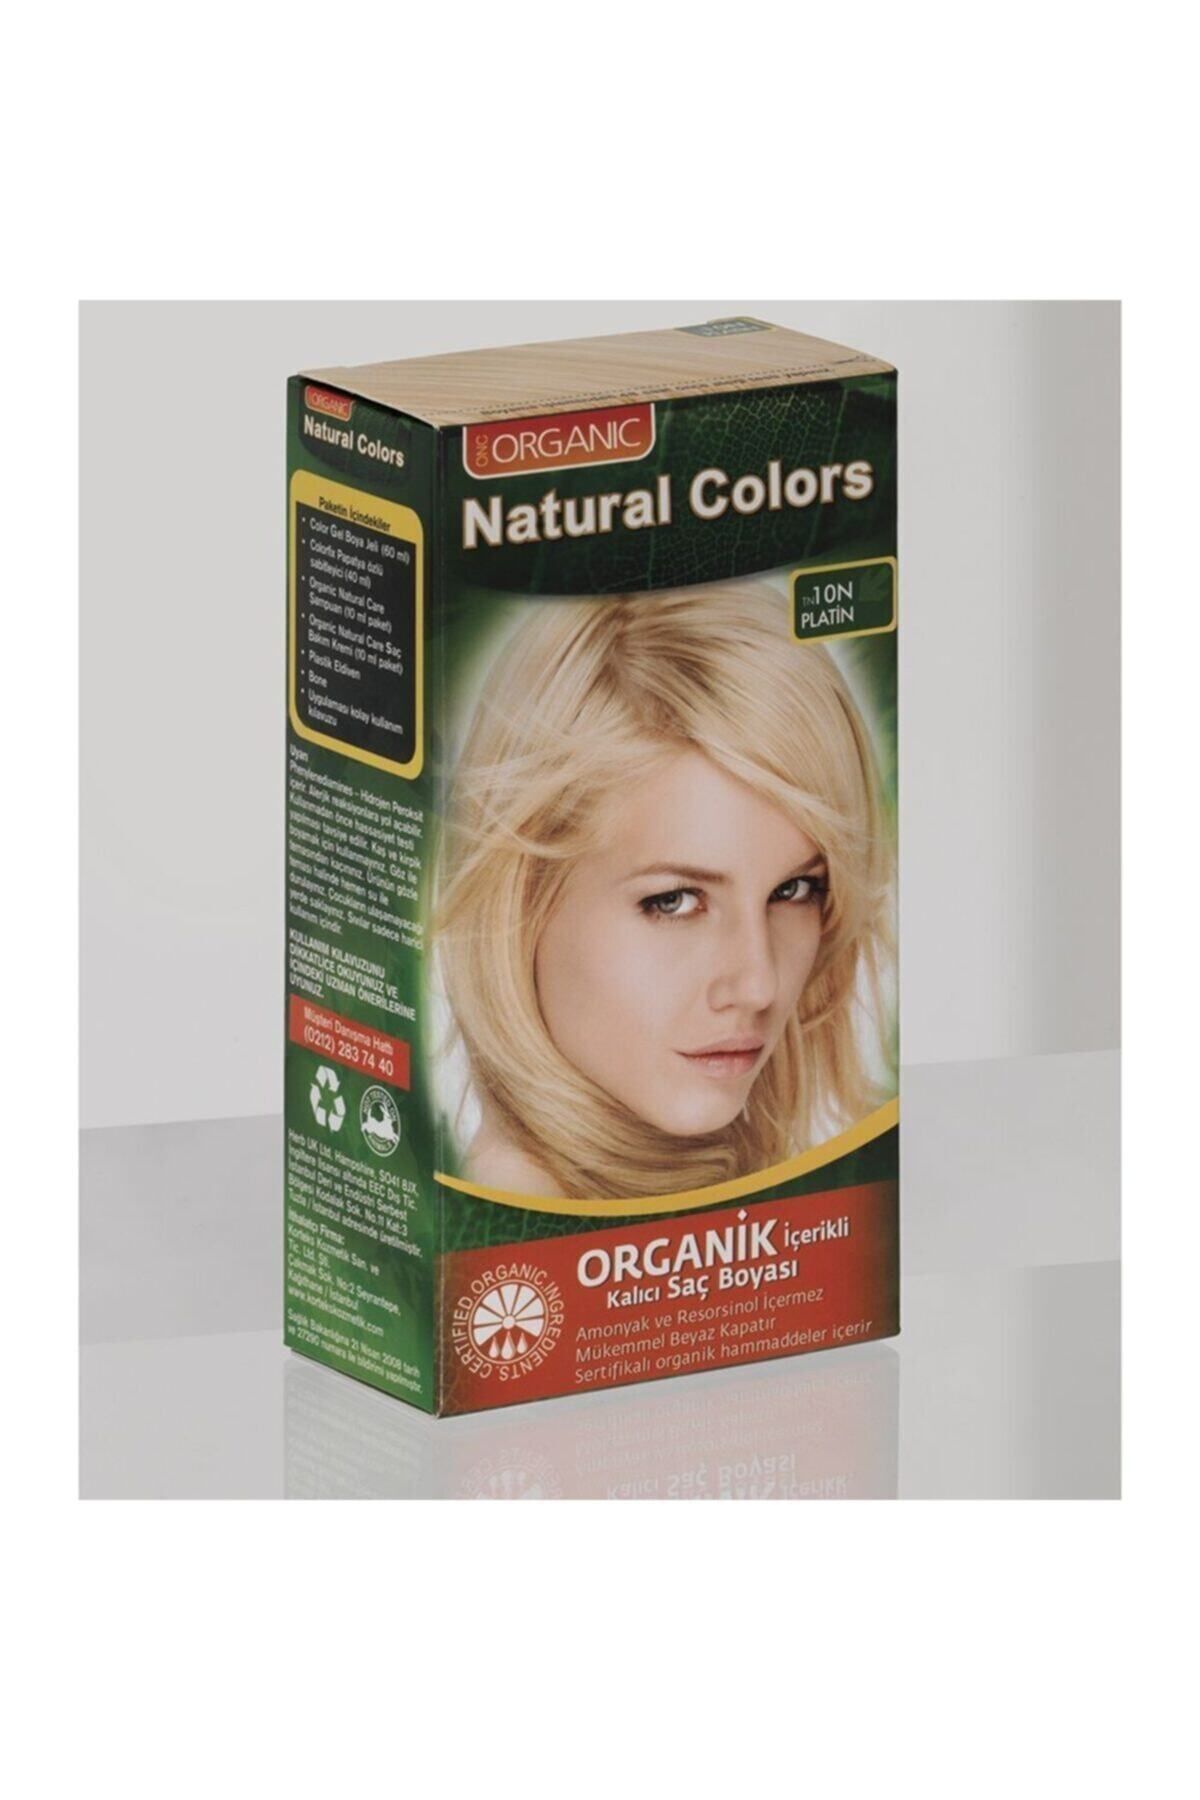 Organic Natural Colors Natural Colors 10n Platin Organik Saç Boyası